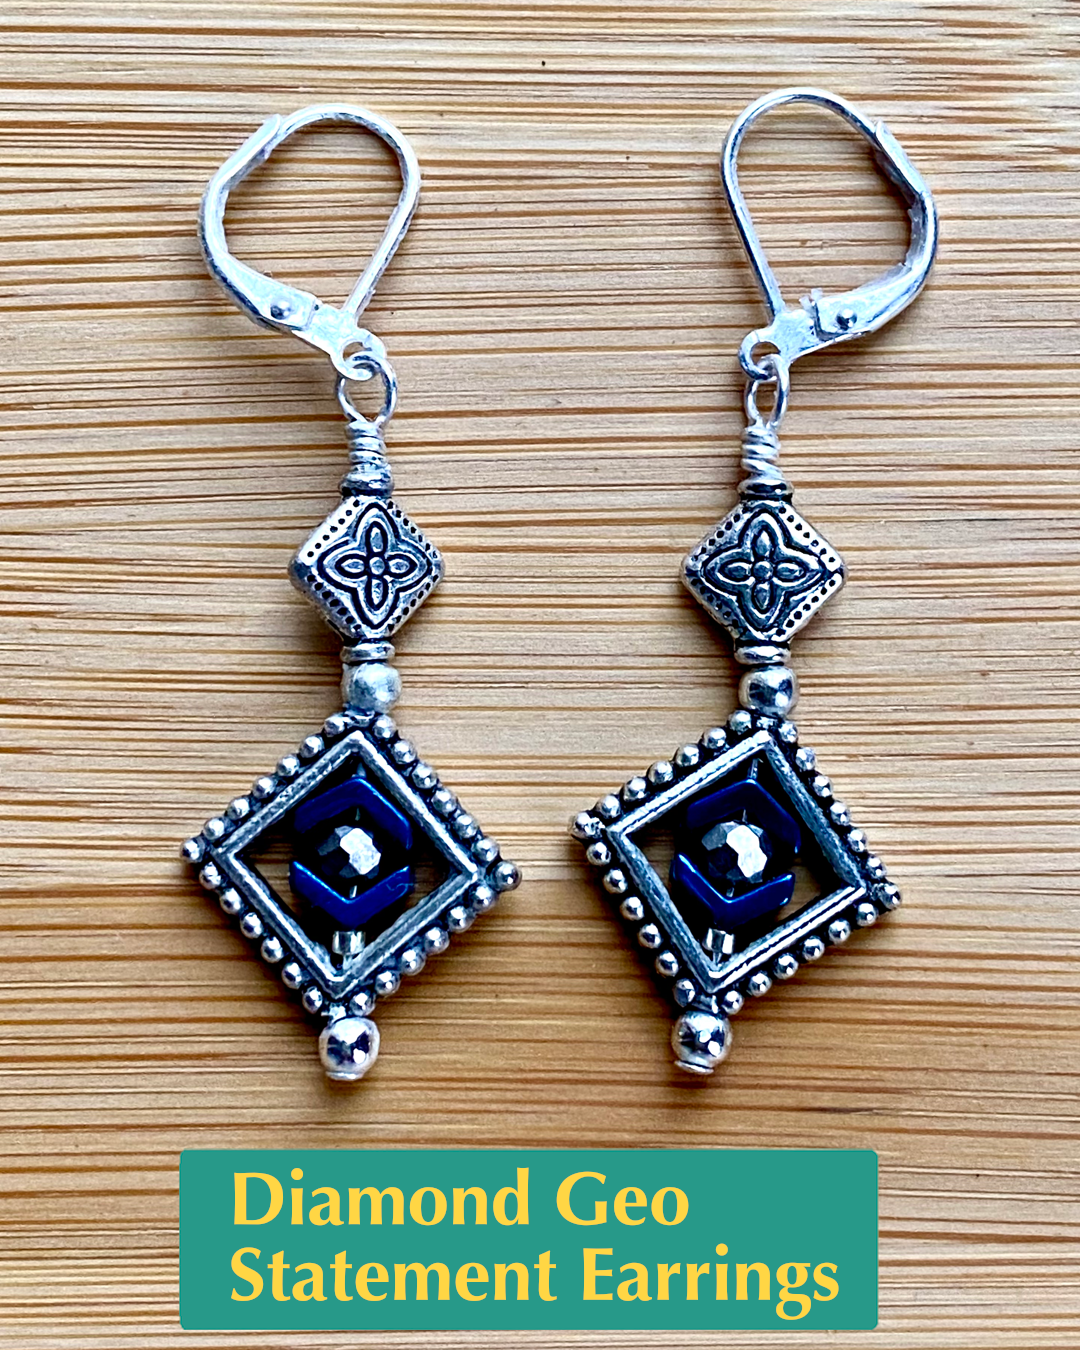 Diamond Geo Statement Earrings